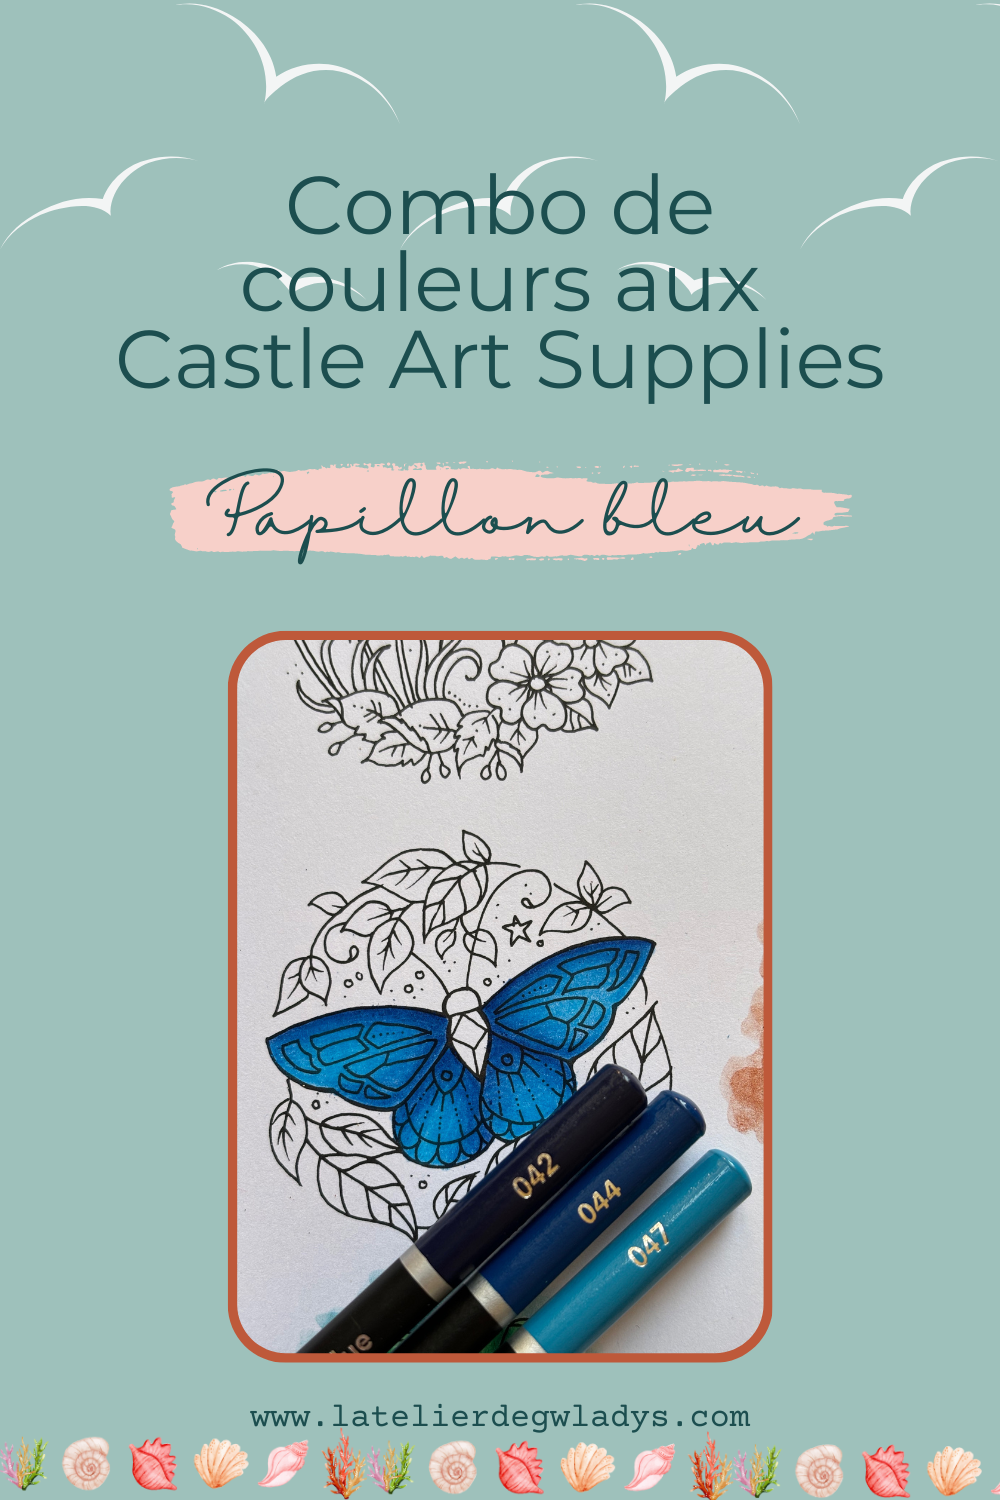 l-atelier-de-gwladys-combo-couleurs-castle-art-supplies-papillon-bleu.png